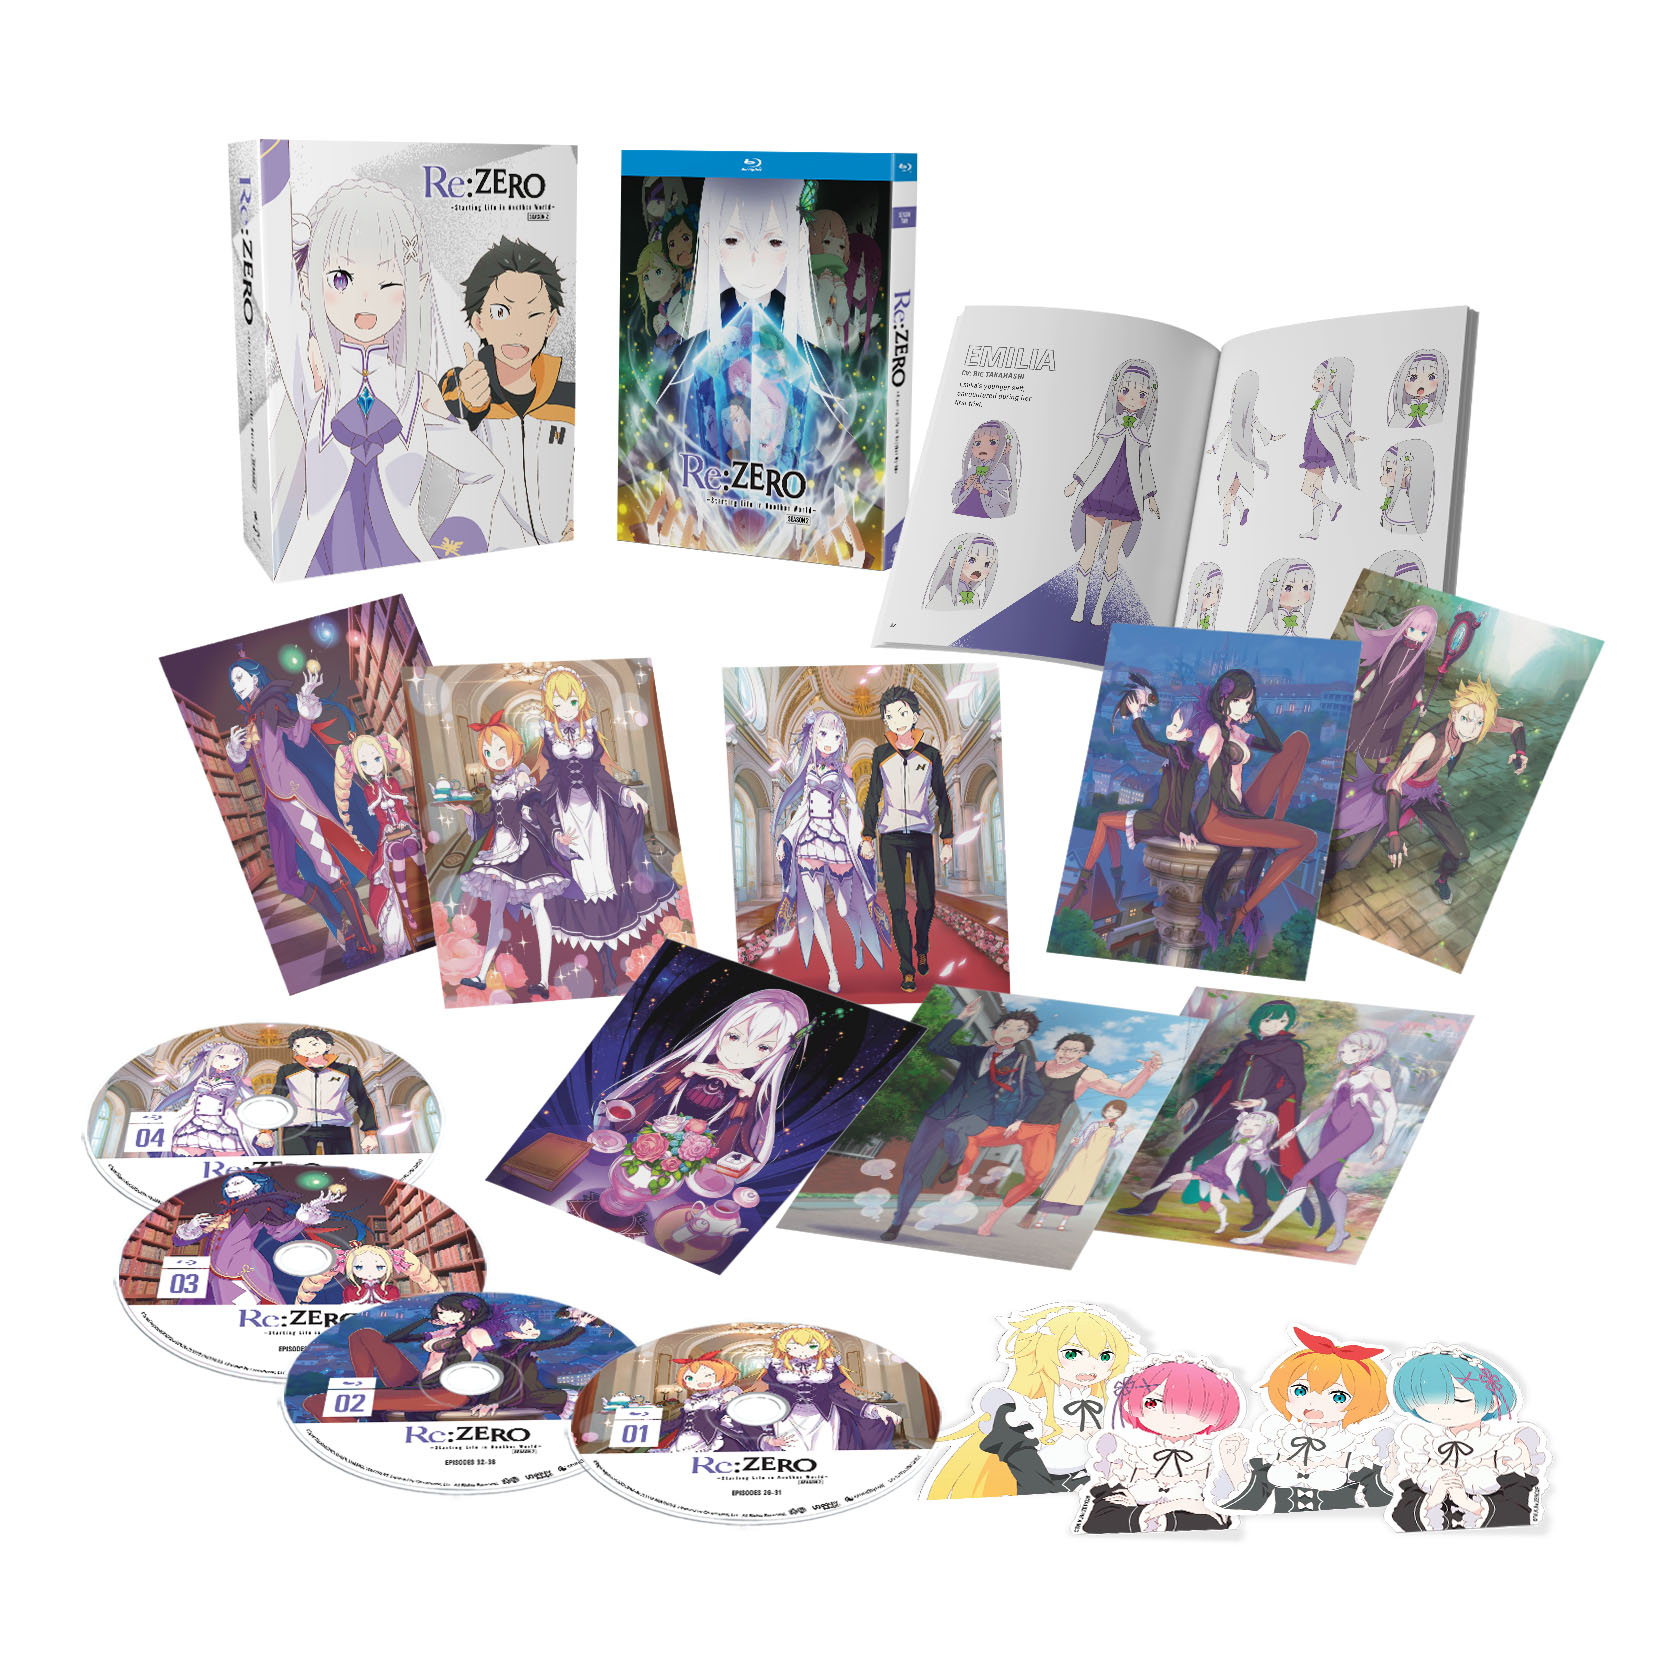 Drifters – Novos episodios do anime em DVD e Blu-Ray